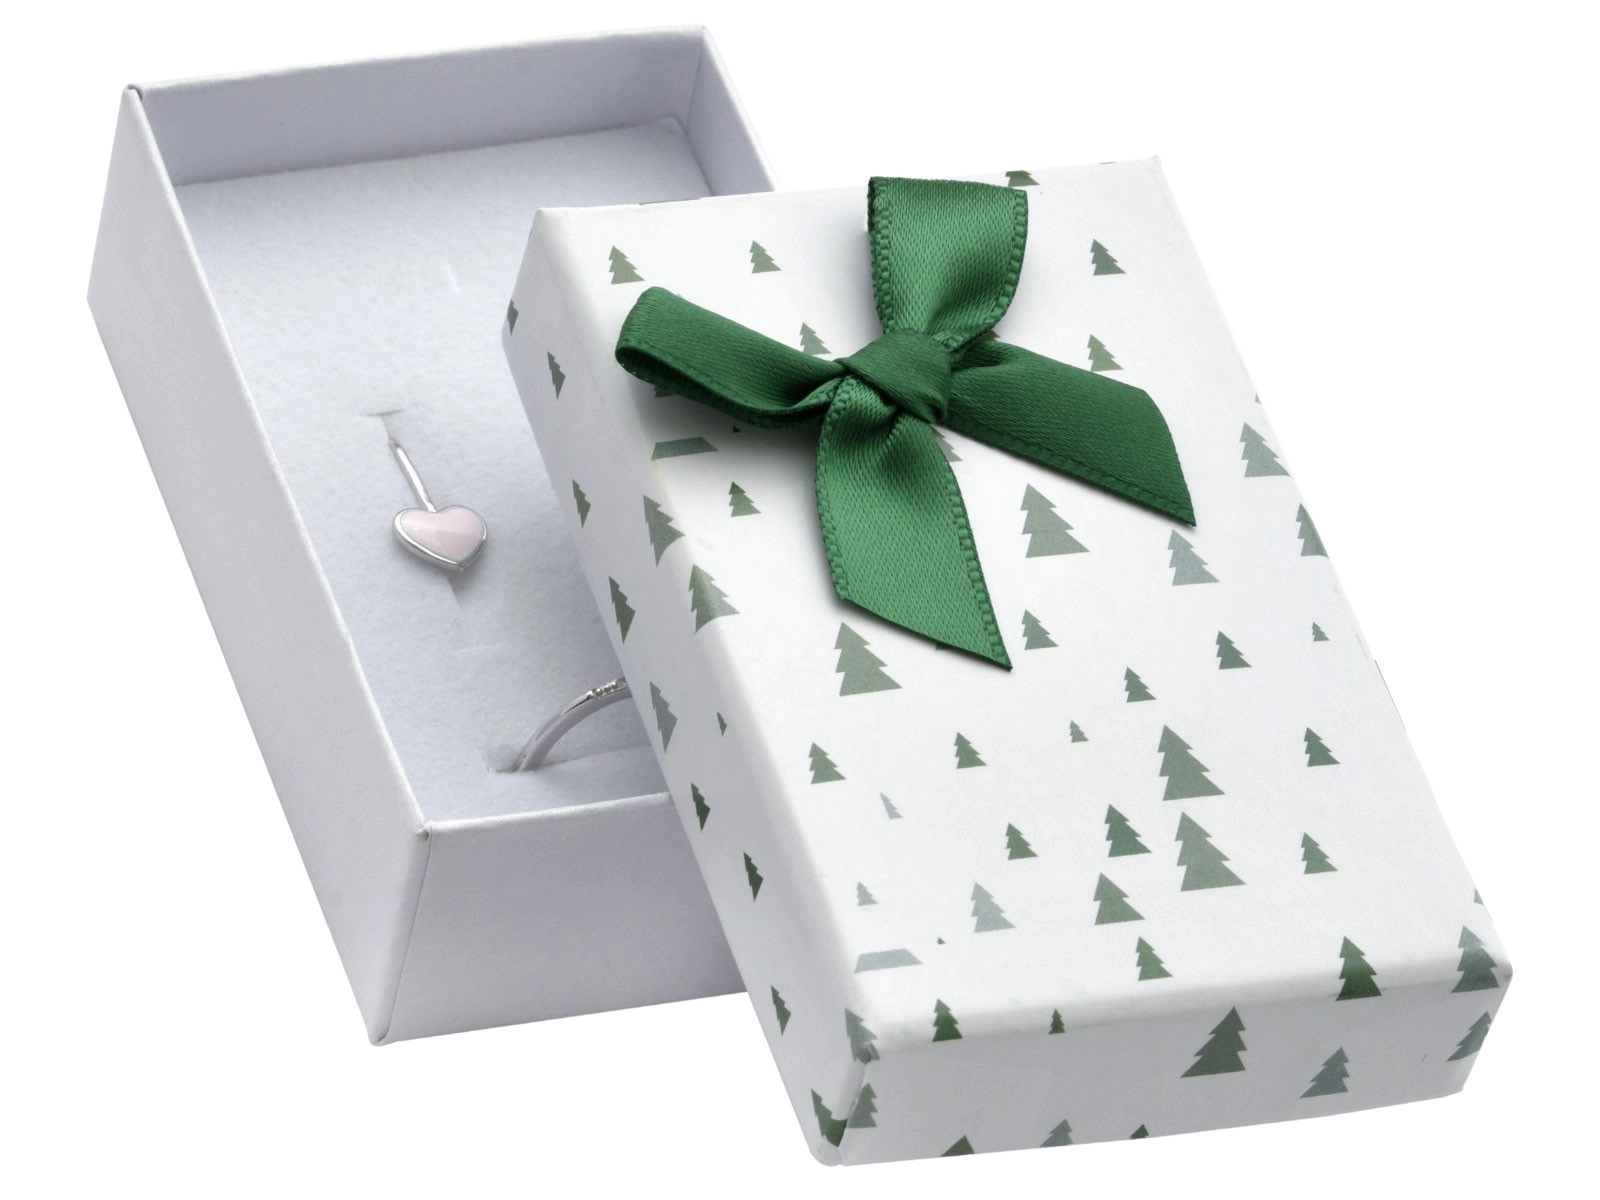 E-shop Šperky Eshop - Vianočná darčeková krabička na náušnice alebo prsteň - zelené stromčeky, mašľa Y49.01